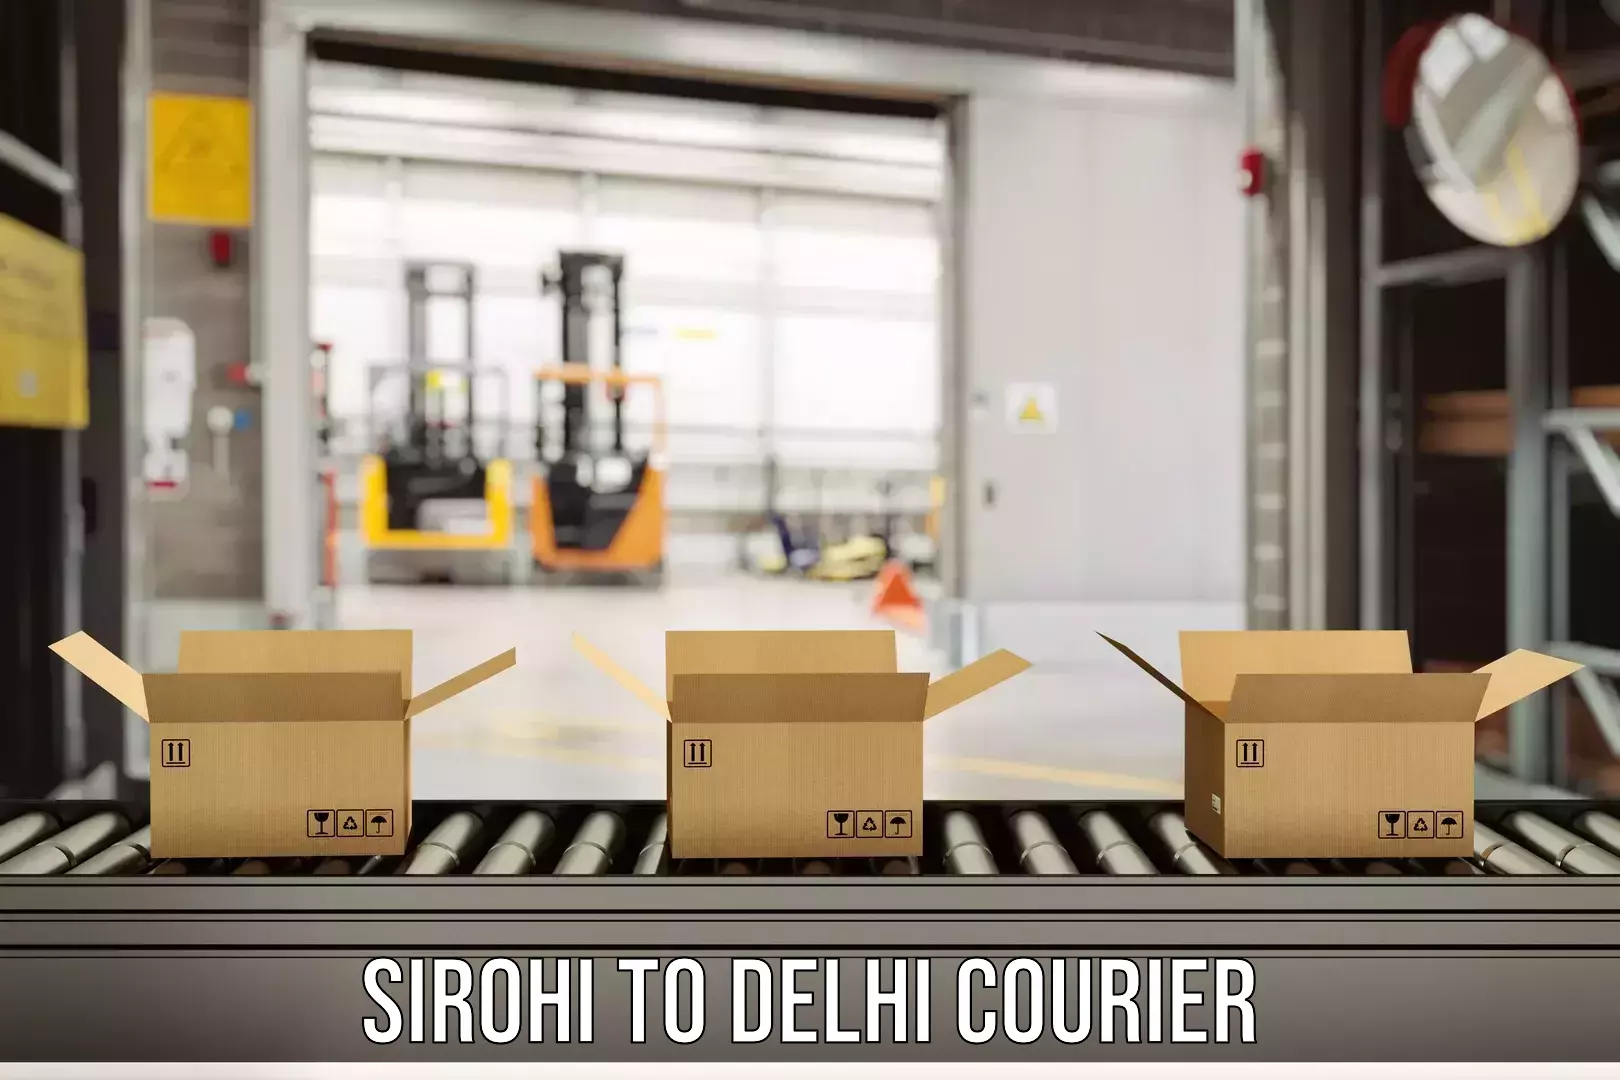 Digital courier platforms Sirohi to Jamia Millia Islamia New Delhi